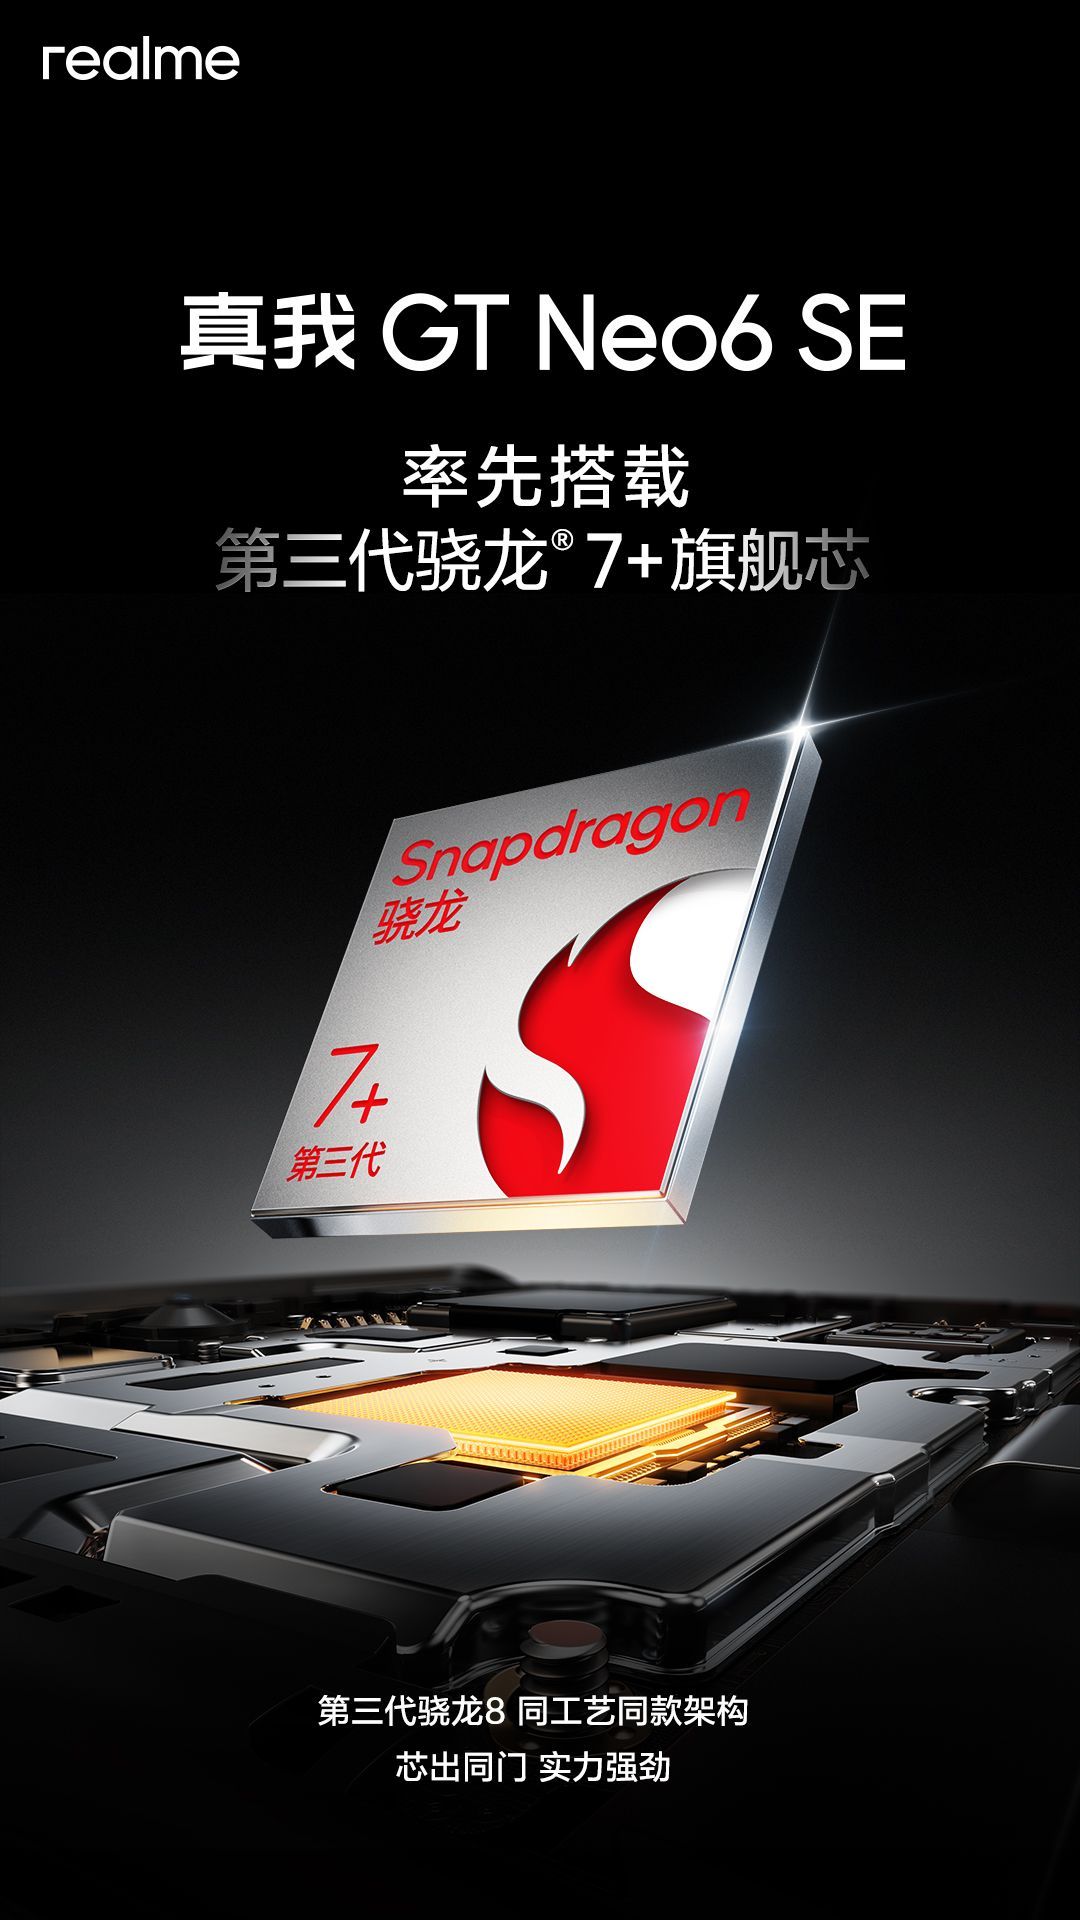 Realme GT Neo6 SE будет оснащен новым процессором Snapdragon 7+ Gen 3